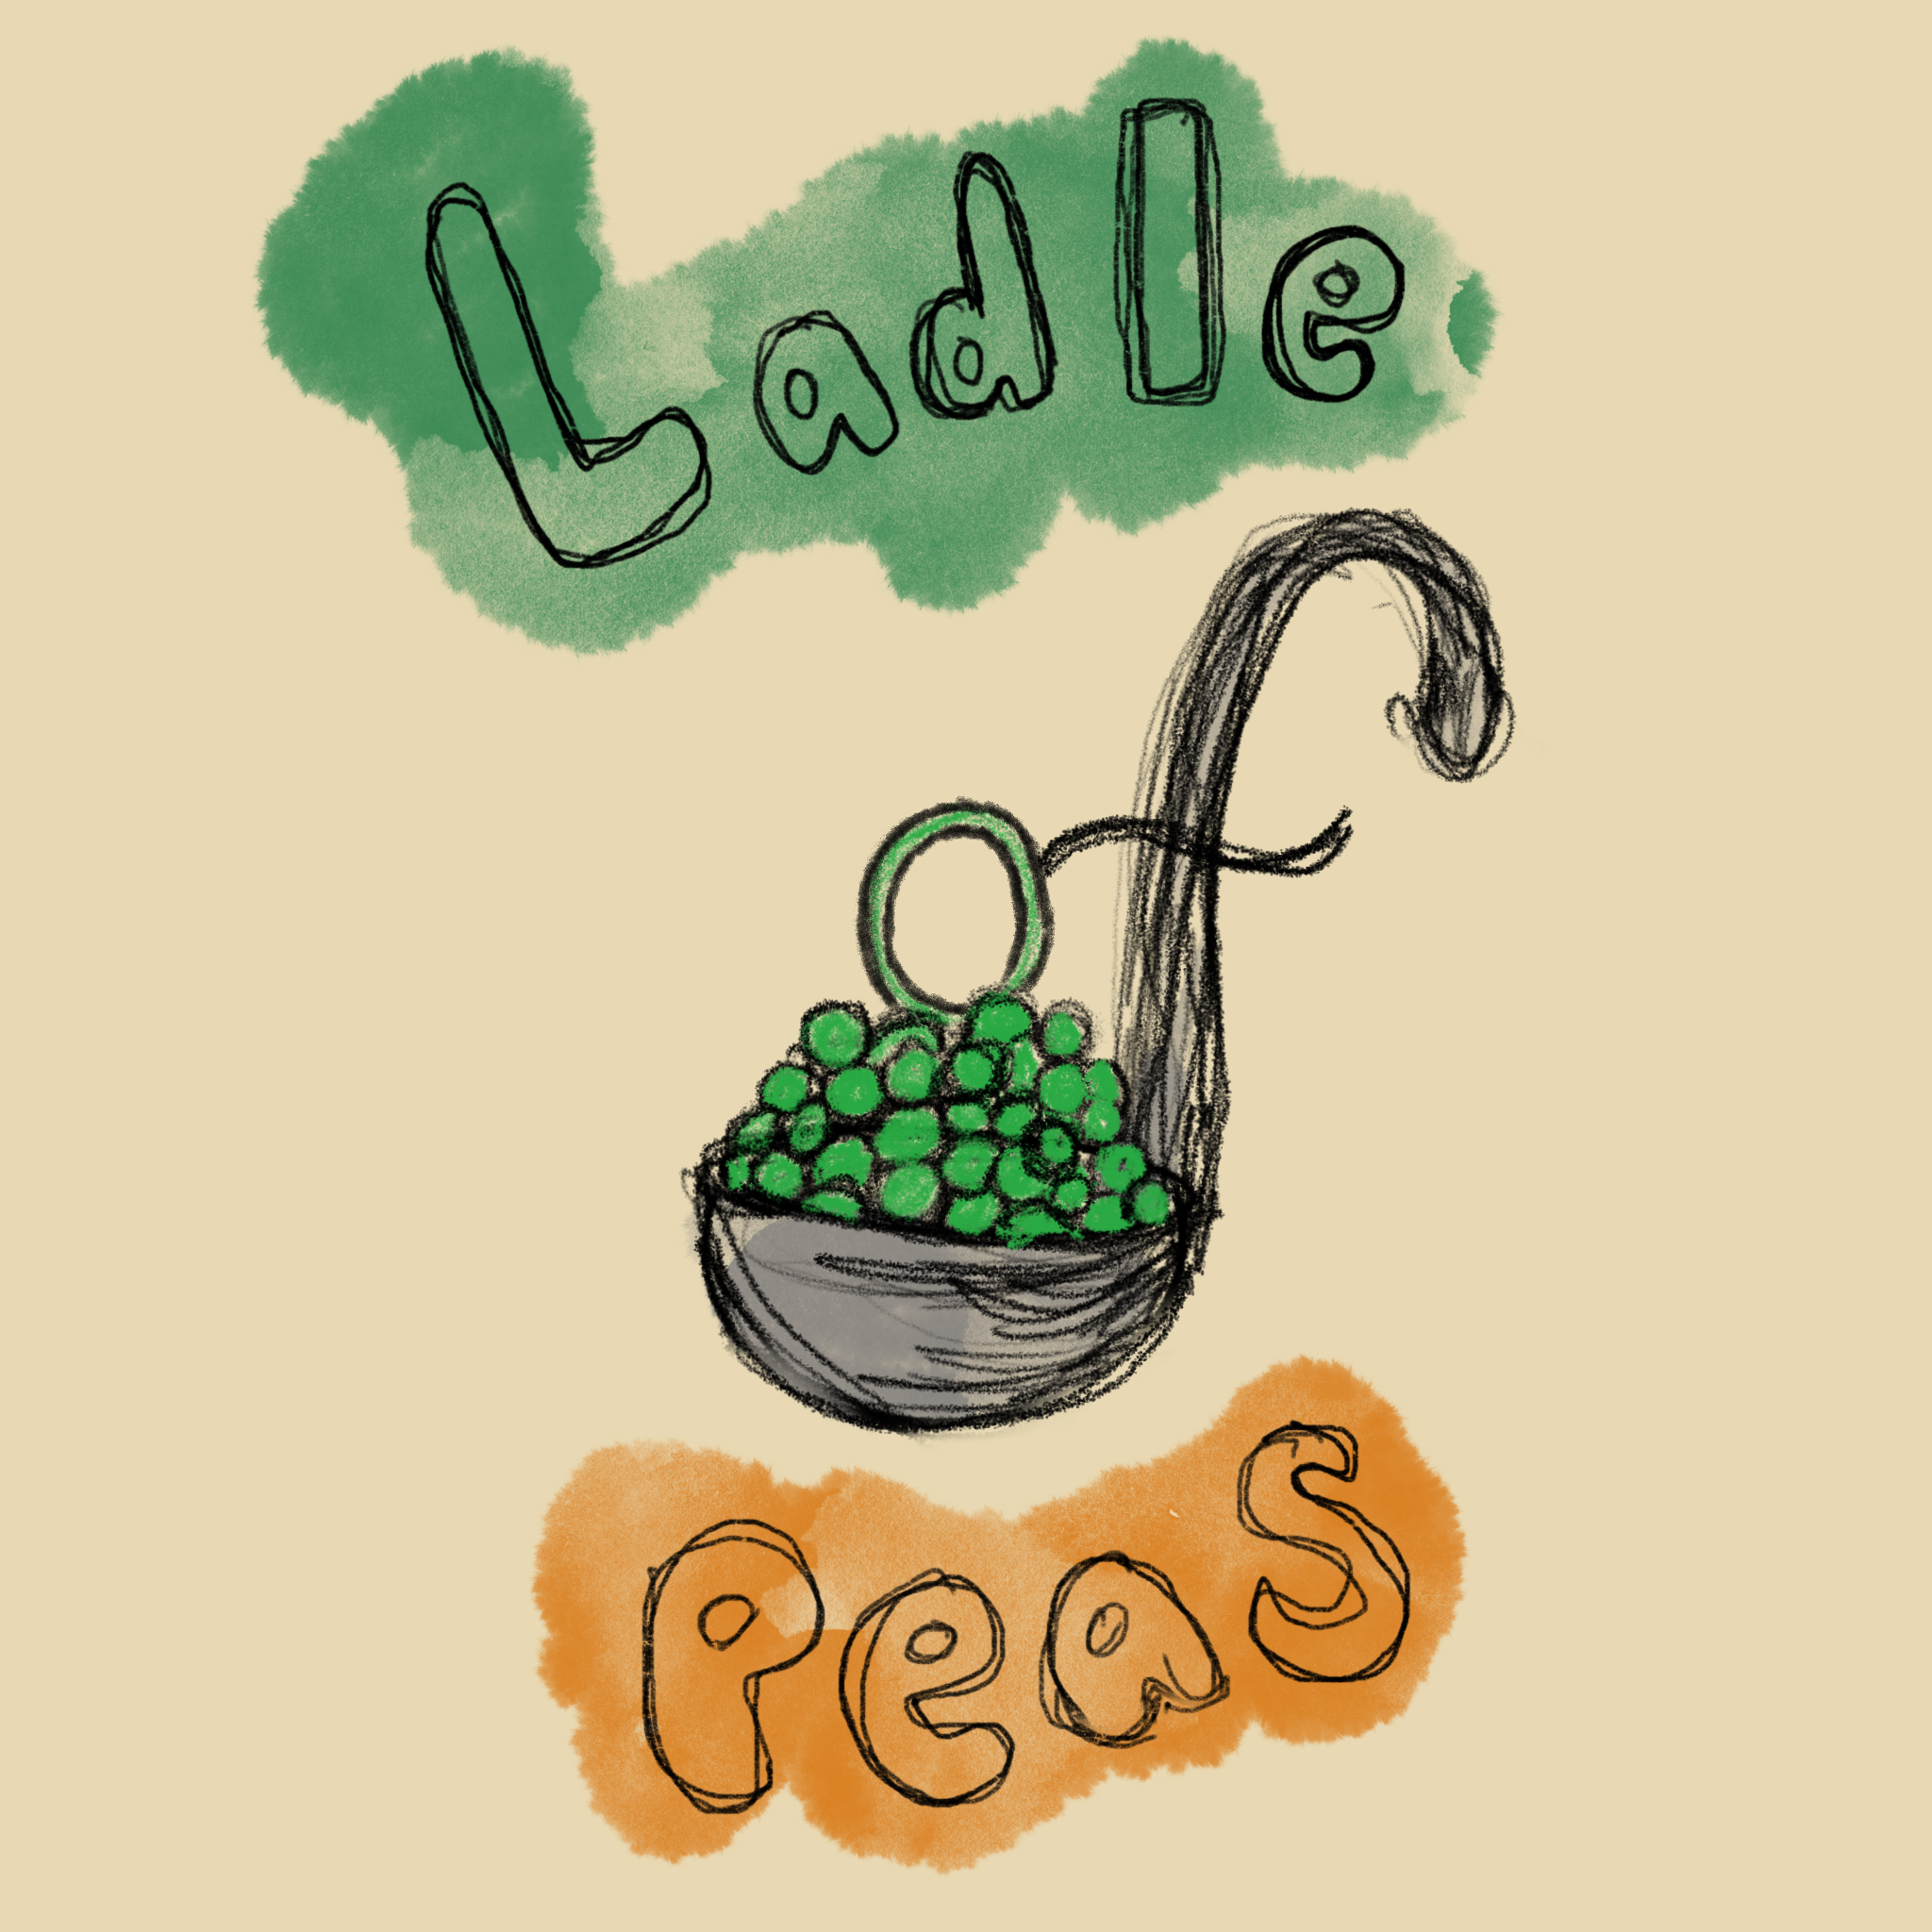 Ladle of Peas